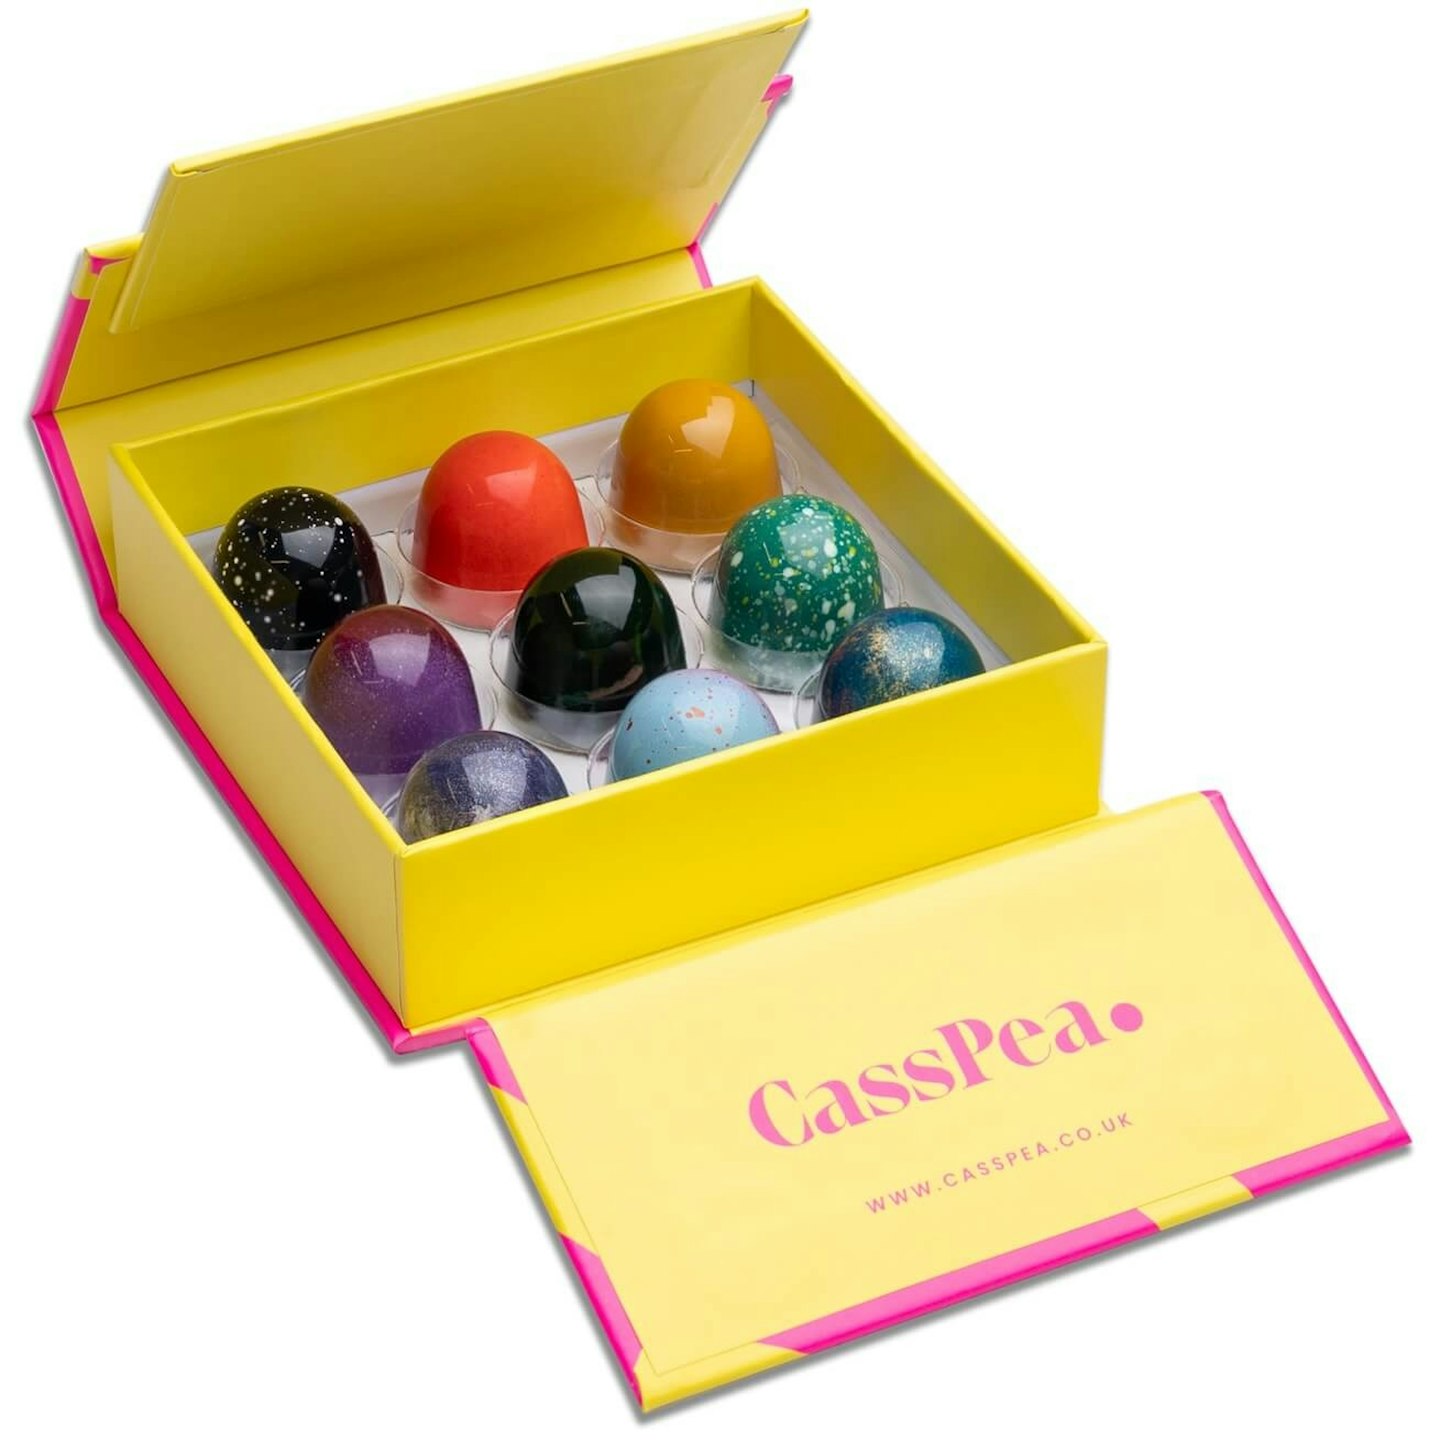 CassPea - Galentine's Day gifts